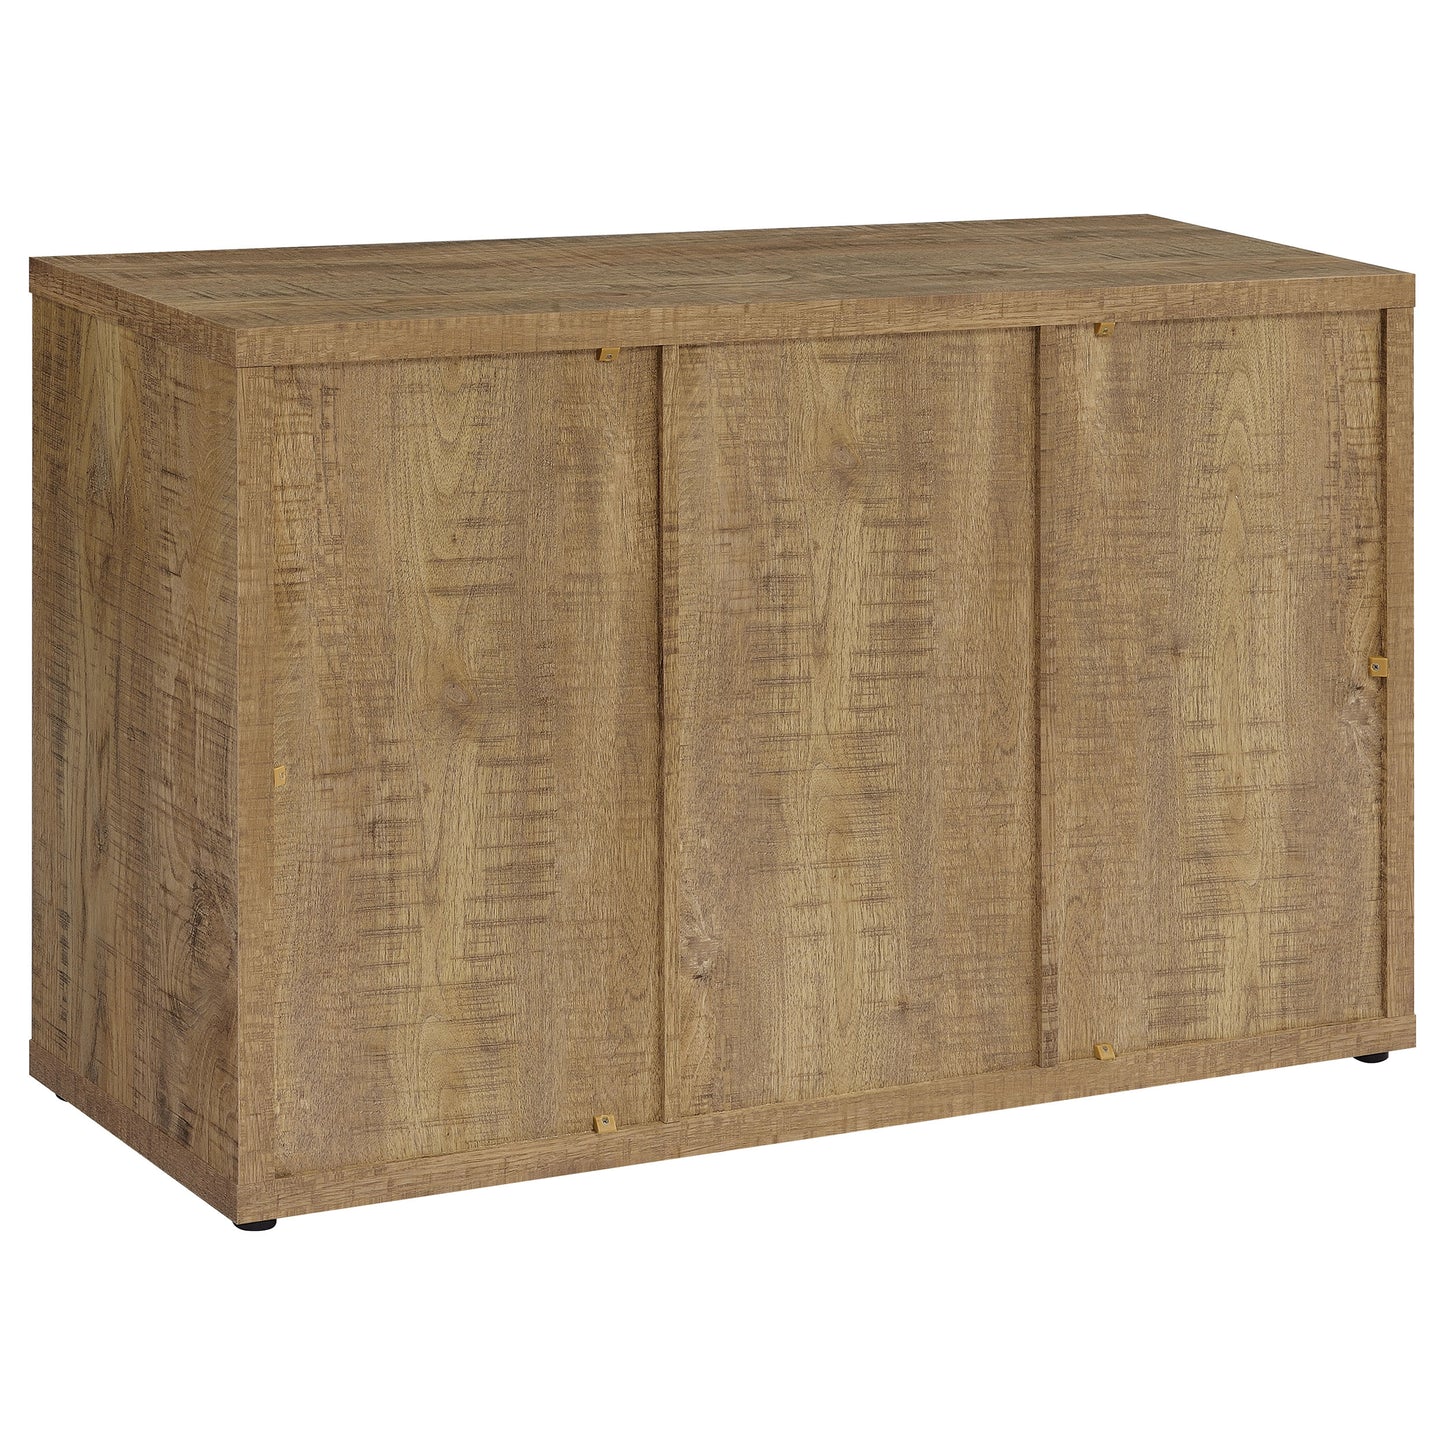 Pepita 3-door Engineered Wood Accent Cabinet with Adjustable Shelves Mango Brown